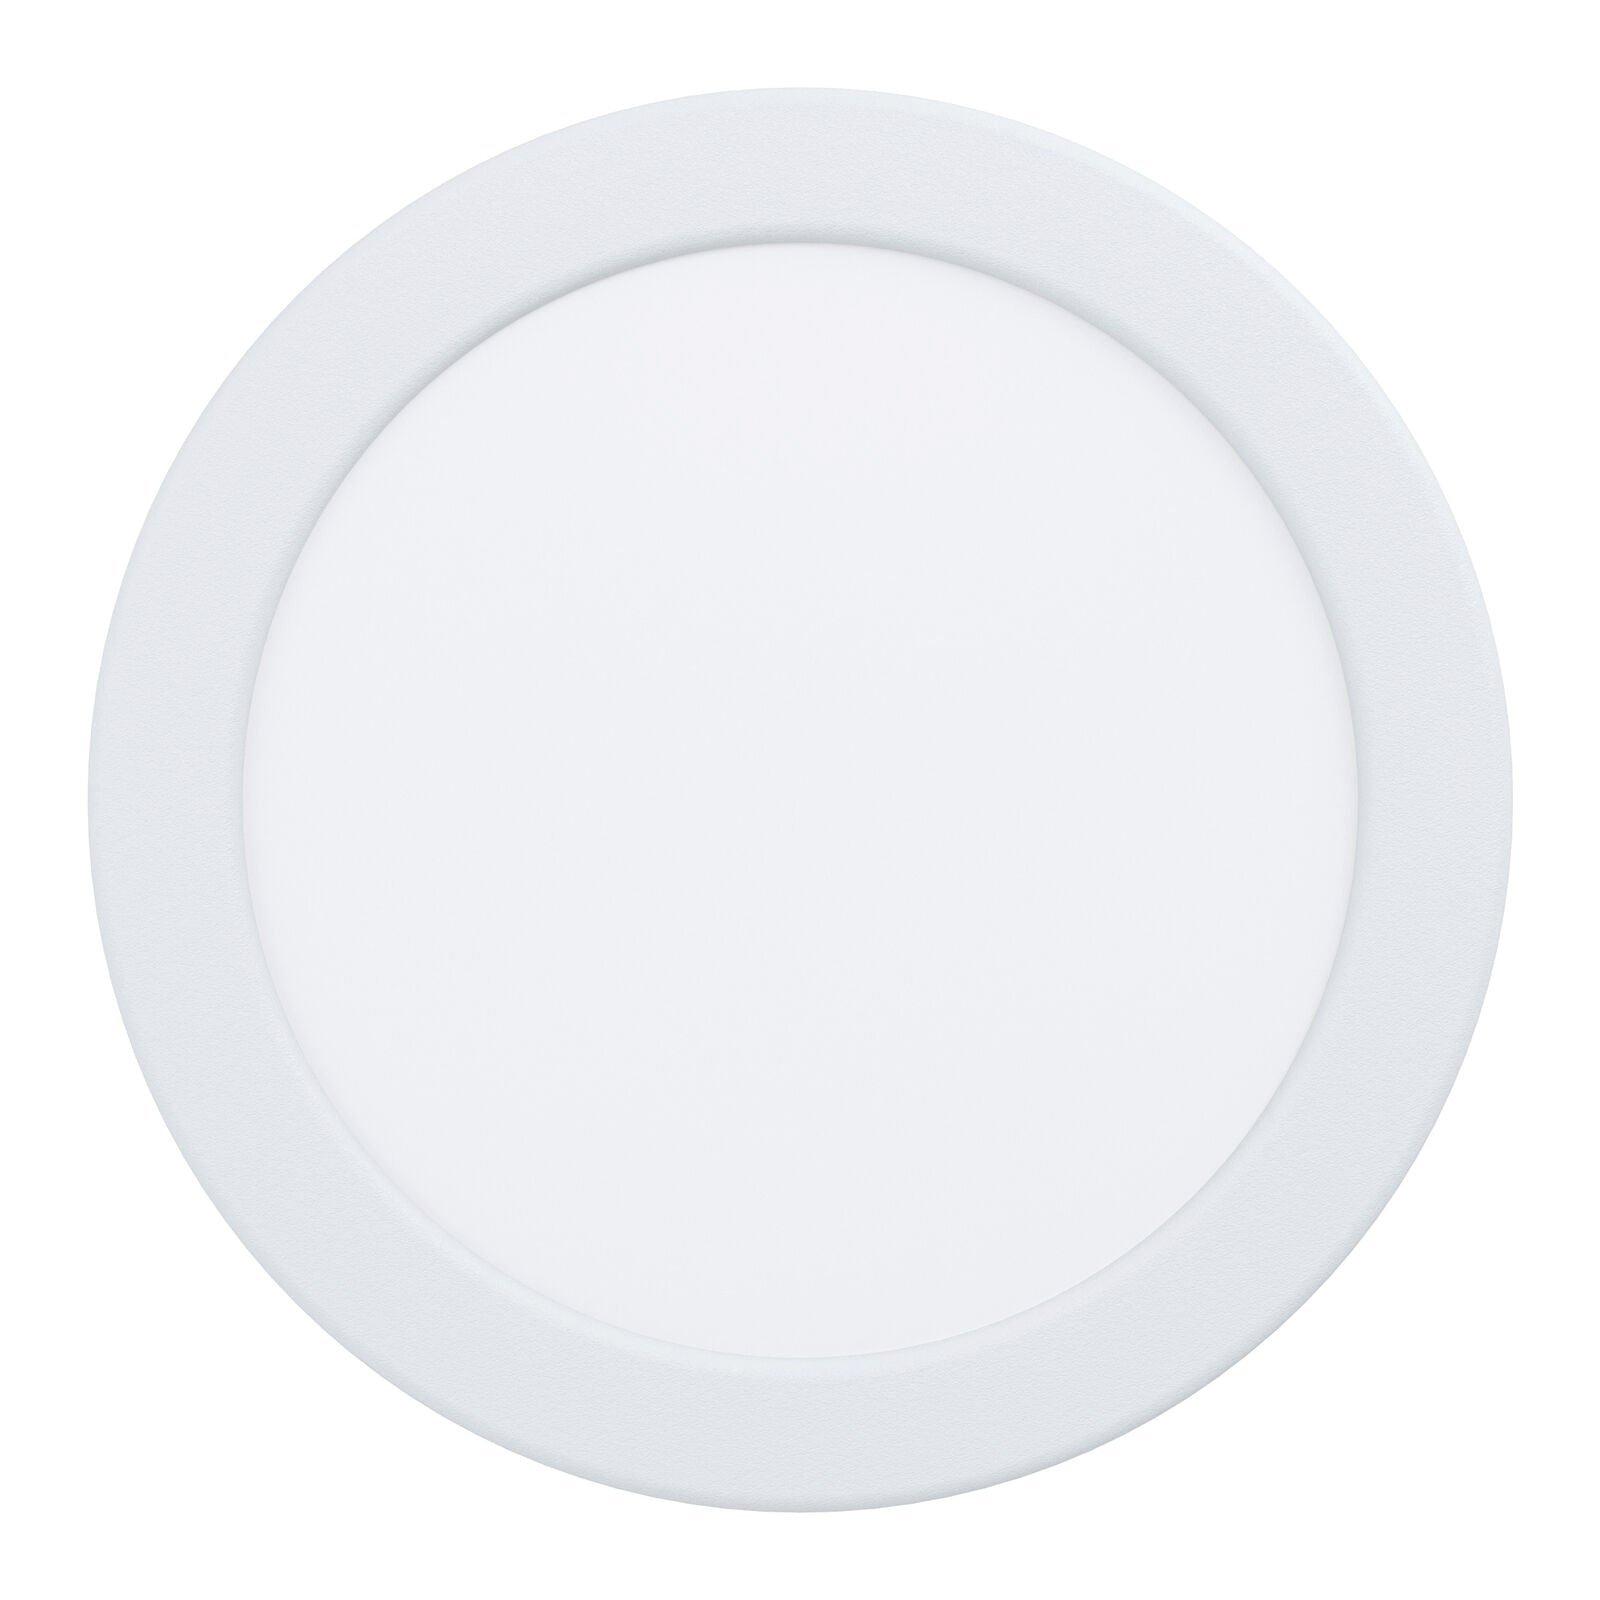 Wall / Ceiling Flush Downlight White Round Spotlight 10.5W Built in LED 3000K